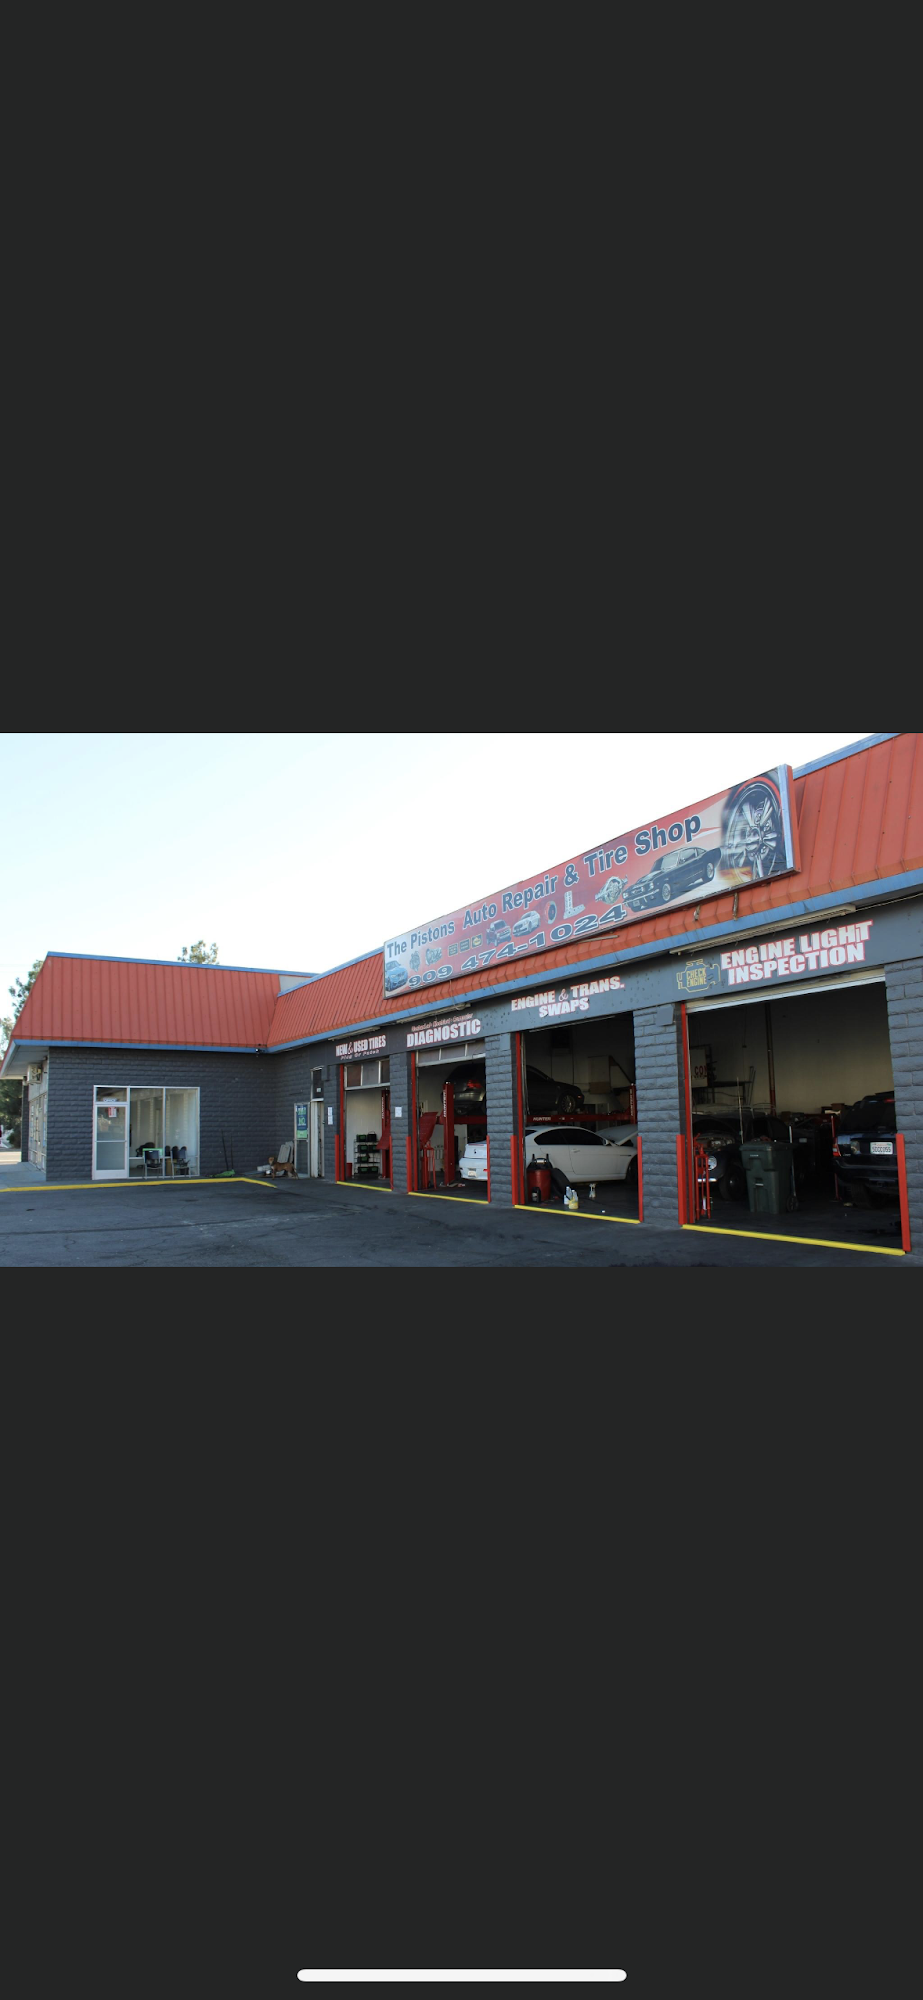 The pistons auto repair center